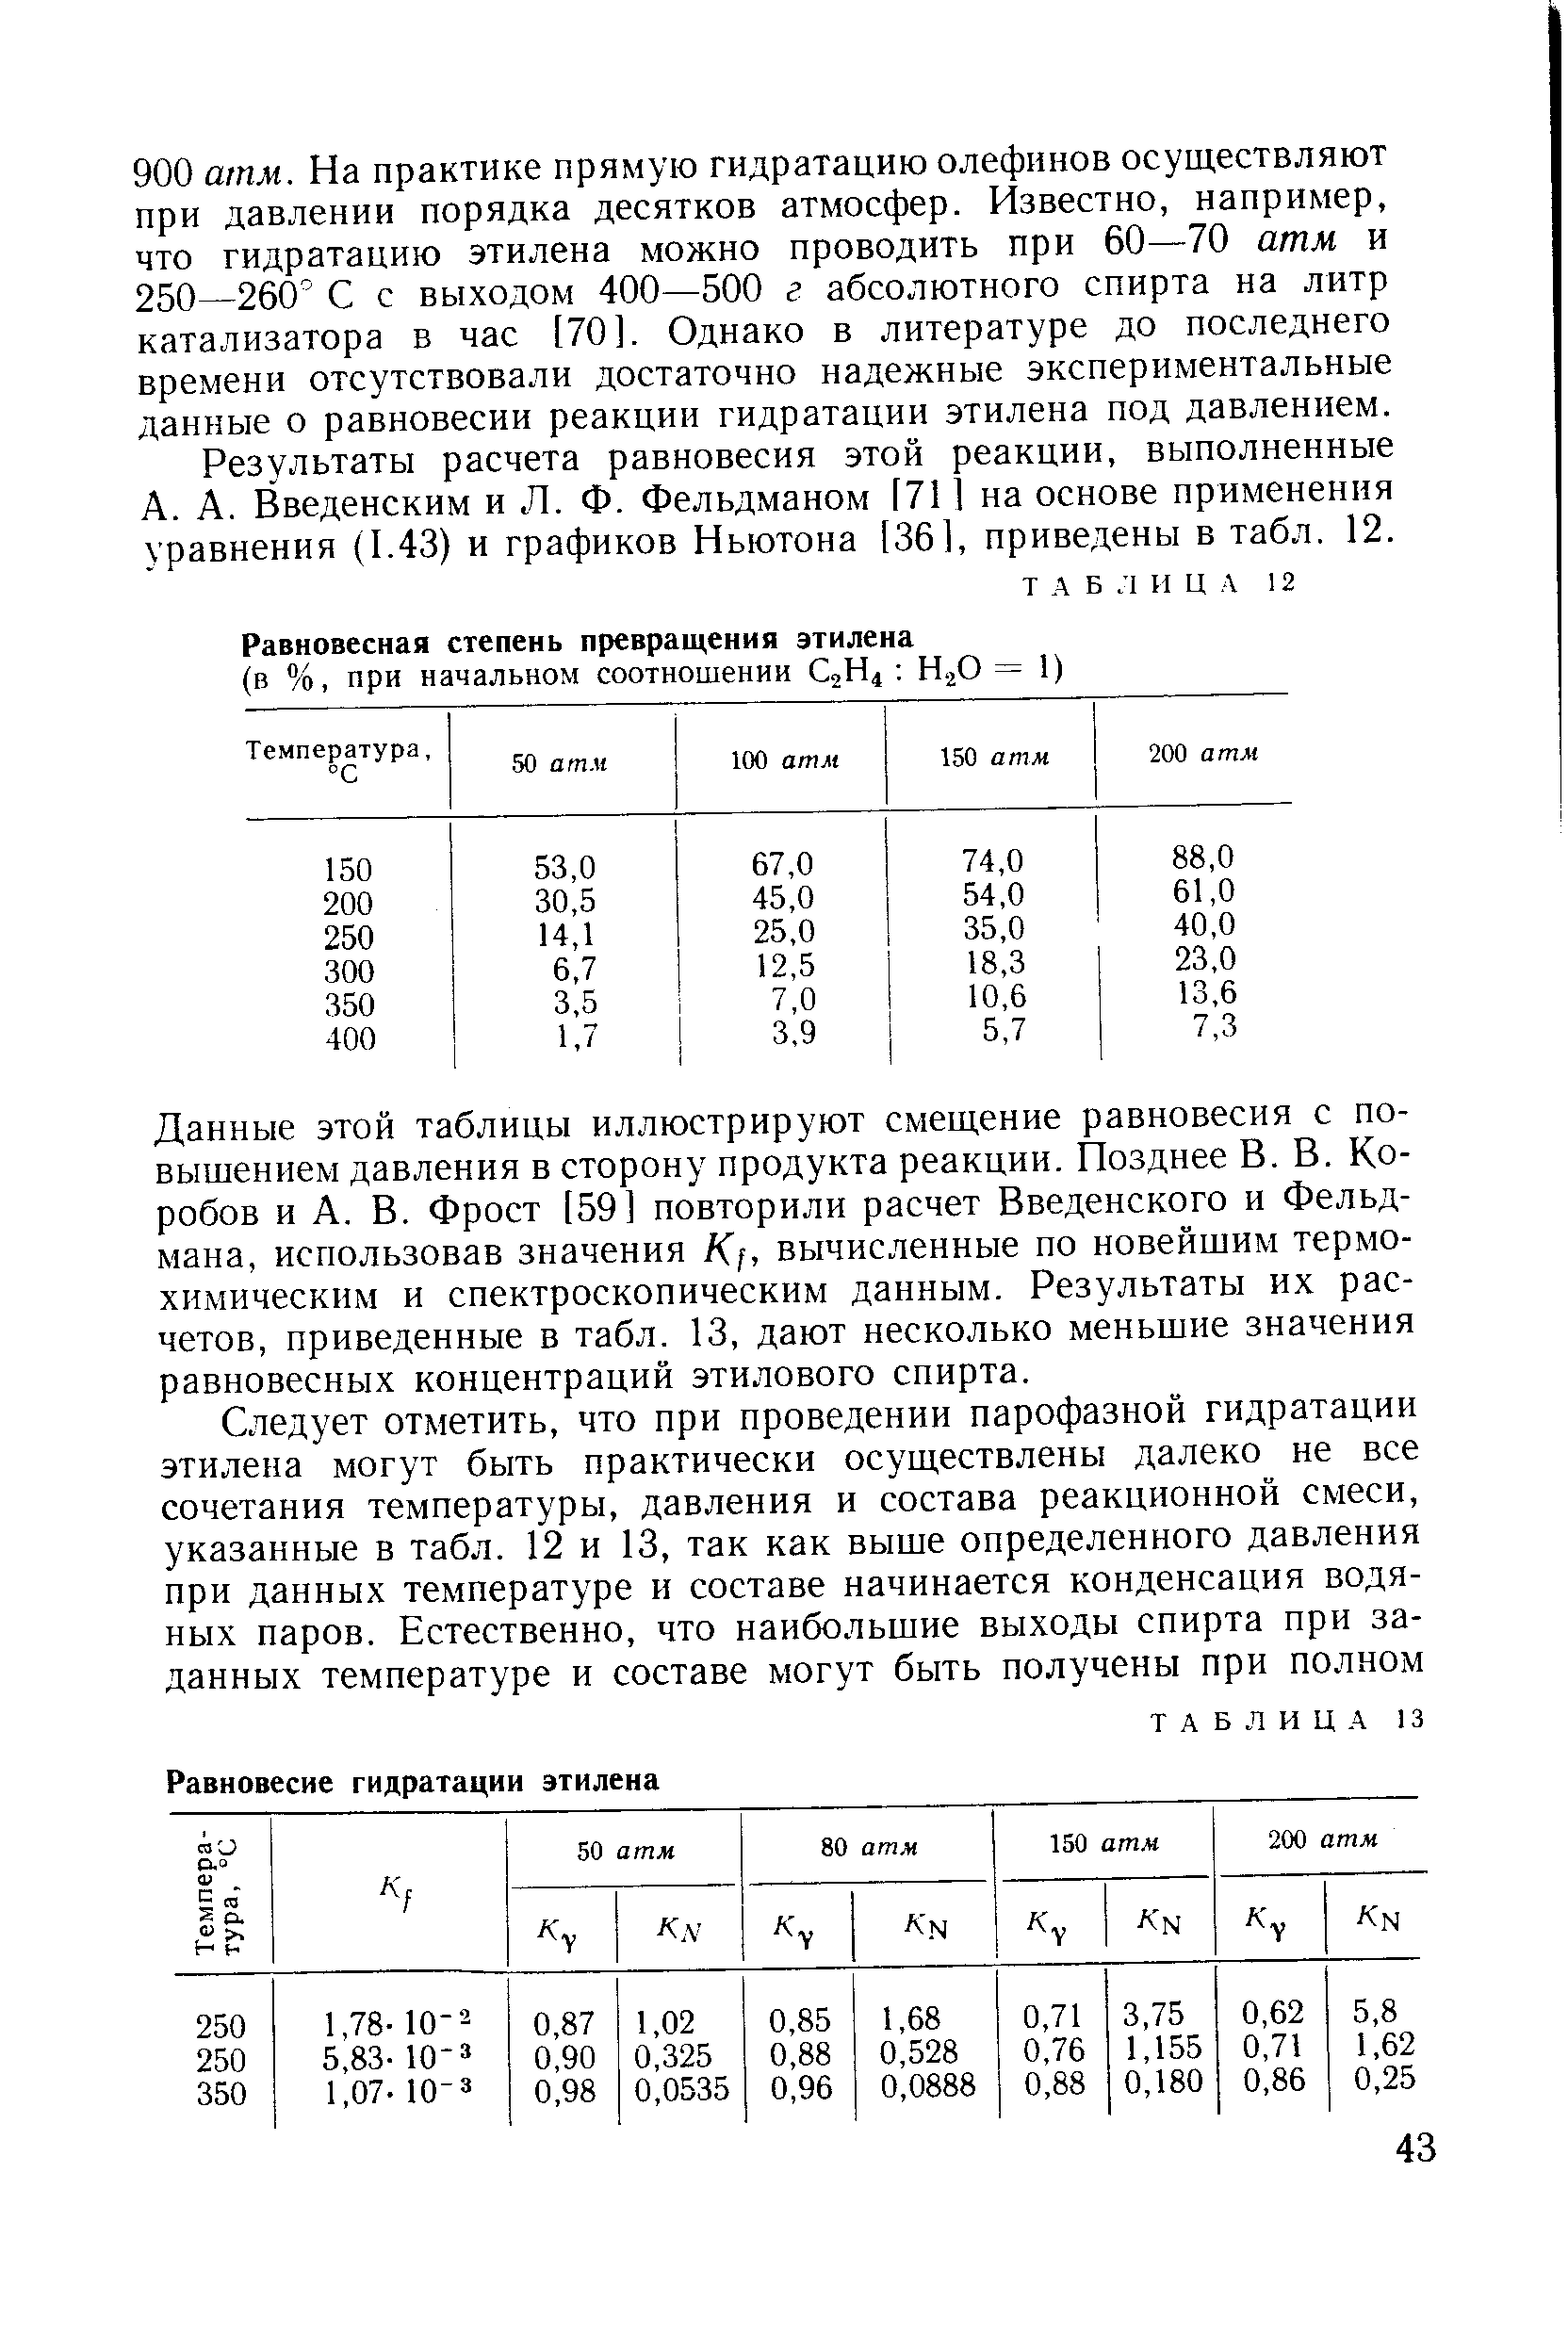 Введенским и Л. Ф. Фельдманом [71 на основе применения уравнения (1.43) и графиков Ньютона [36], приведены в табл. 12.